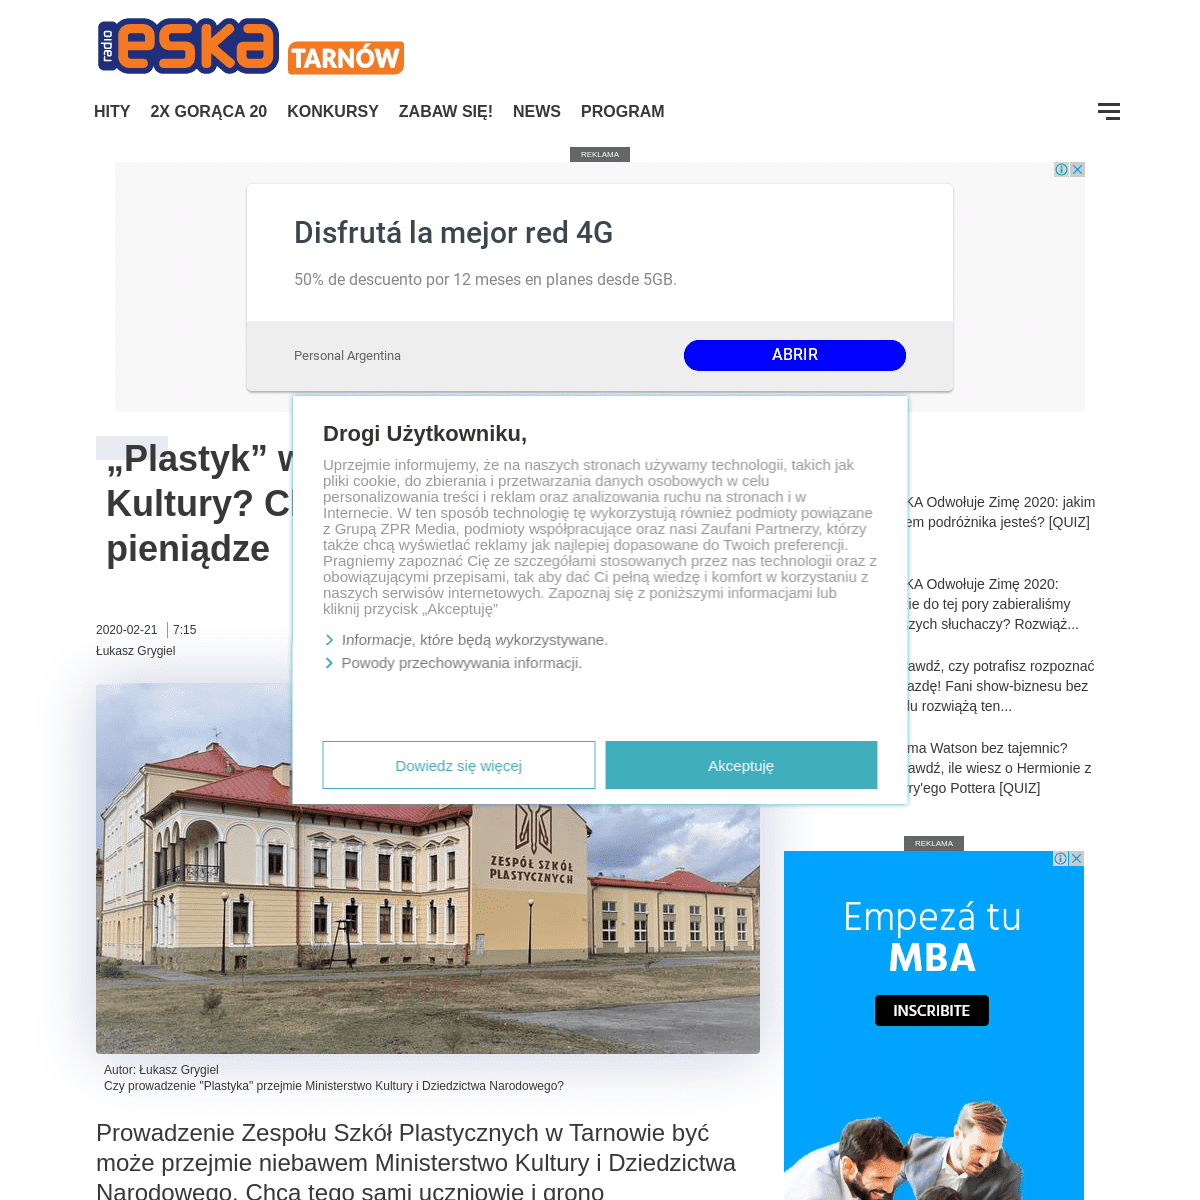 A complete backup of www.eska.pl/tarnow/plastyk-w-rekach-ministerstwa-kultury-chodzi-o-wiekszy-prestiz-i-pieniadze-aa-8xqr-Es5V-